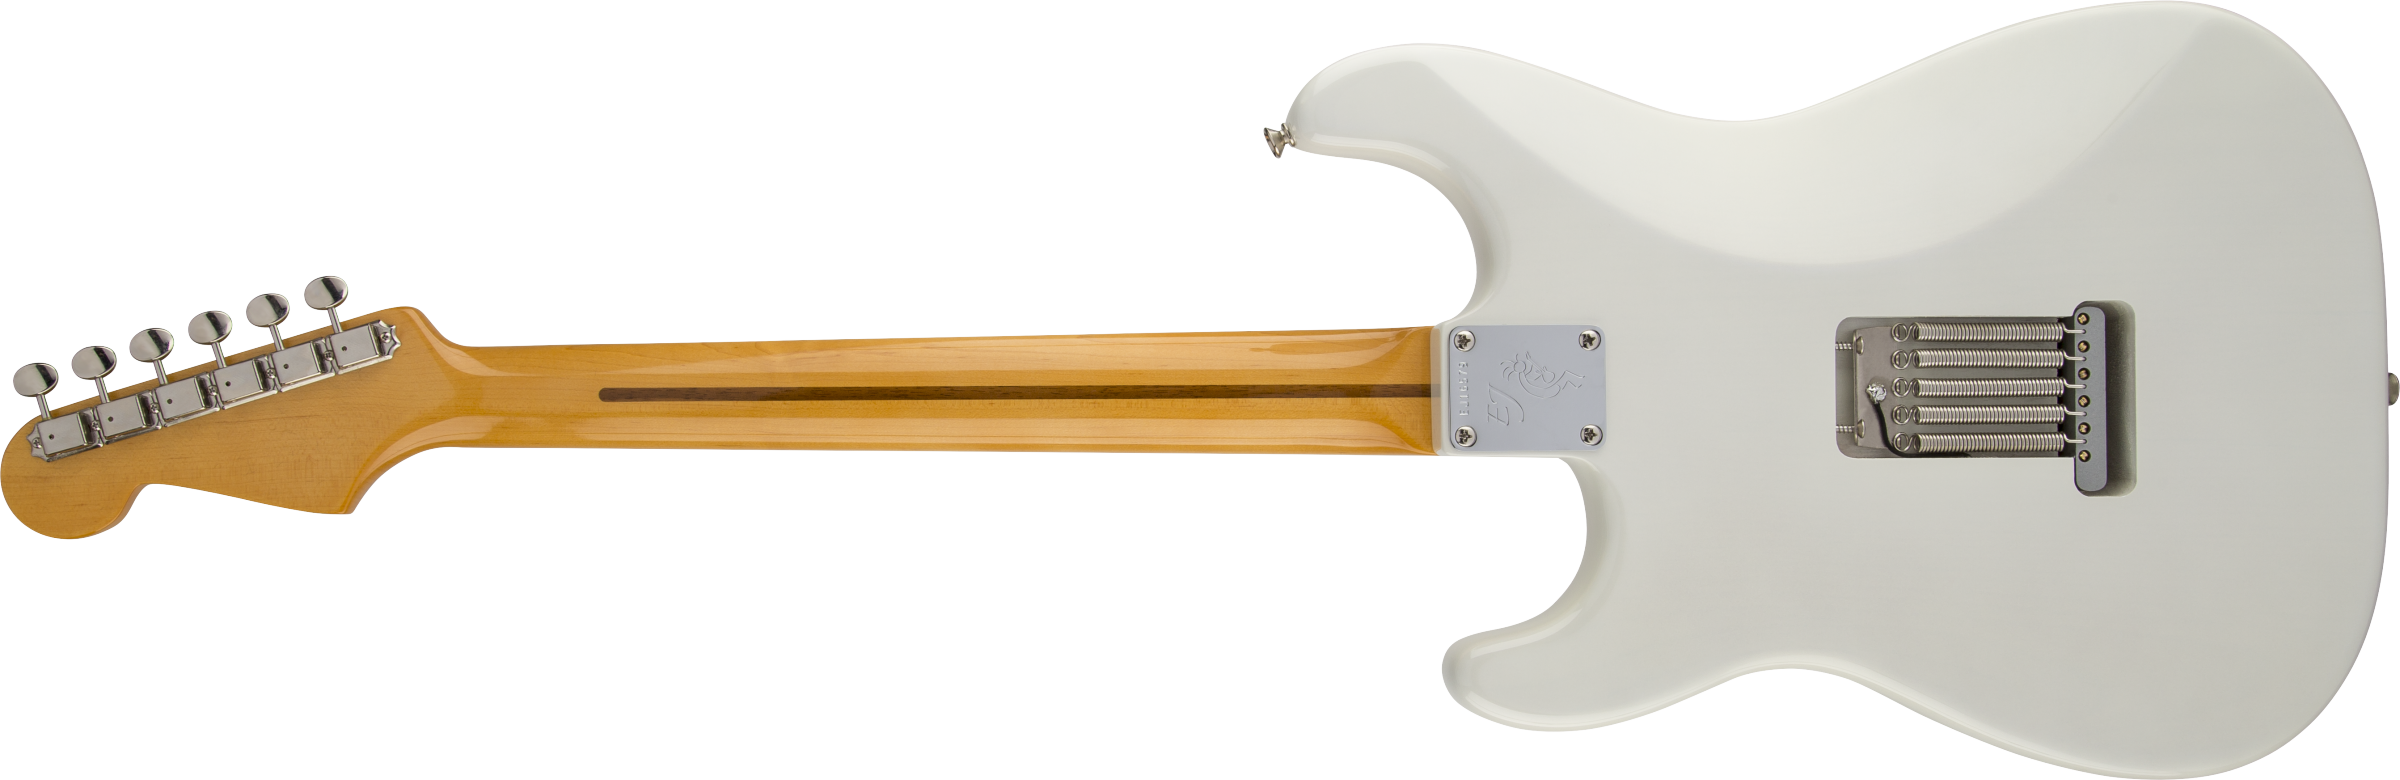 Fender Eric Johnson Stratocaster, Maple Fb, White Blonde